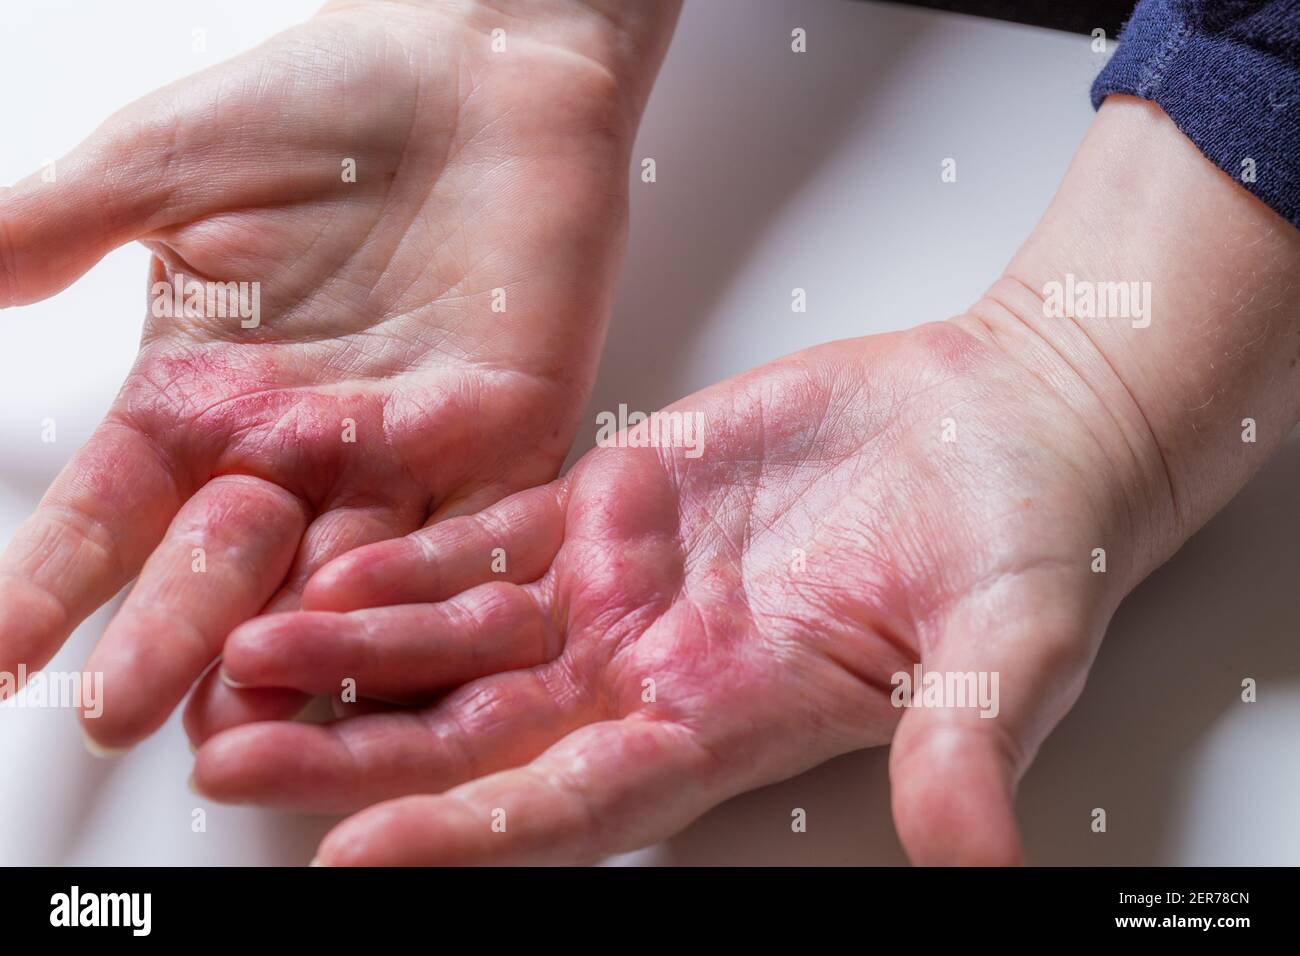 Dermatite atopique, rouge, démangeaisons des mains avec cloques et peau  gercée Photo Stock - Alamy